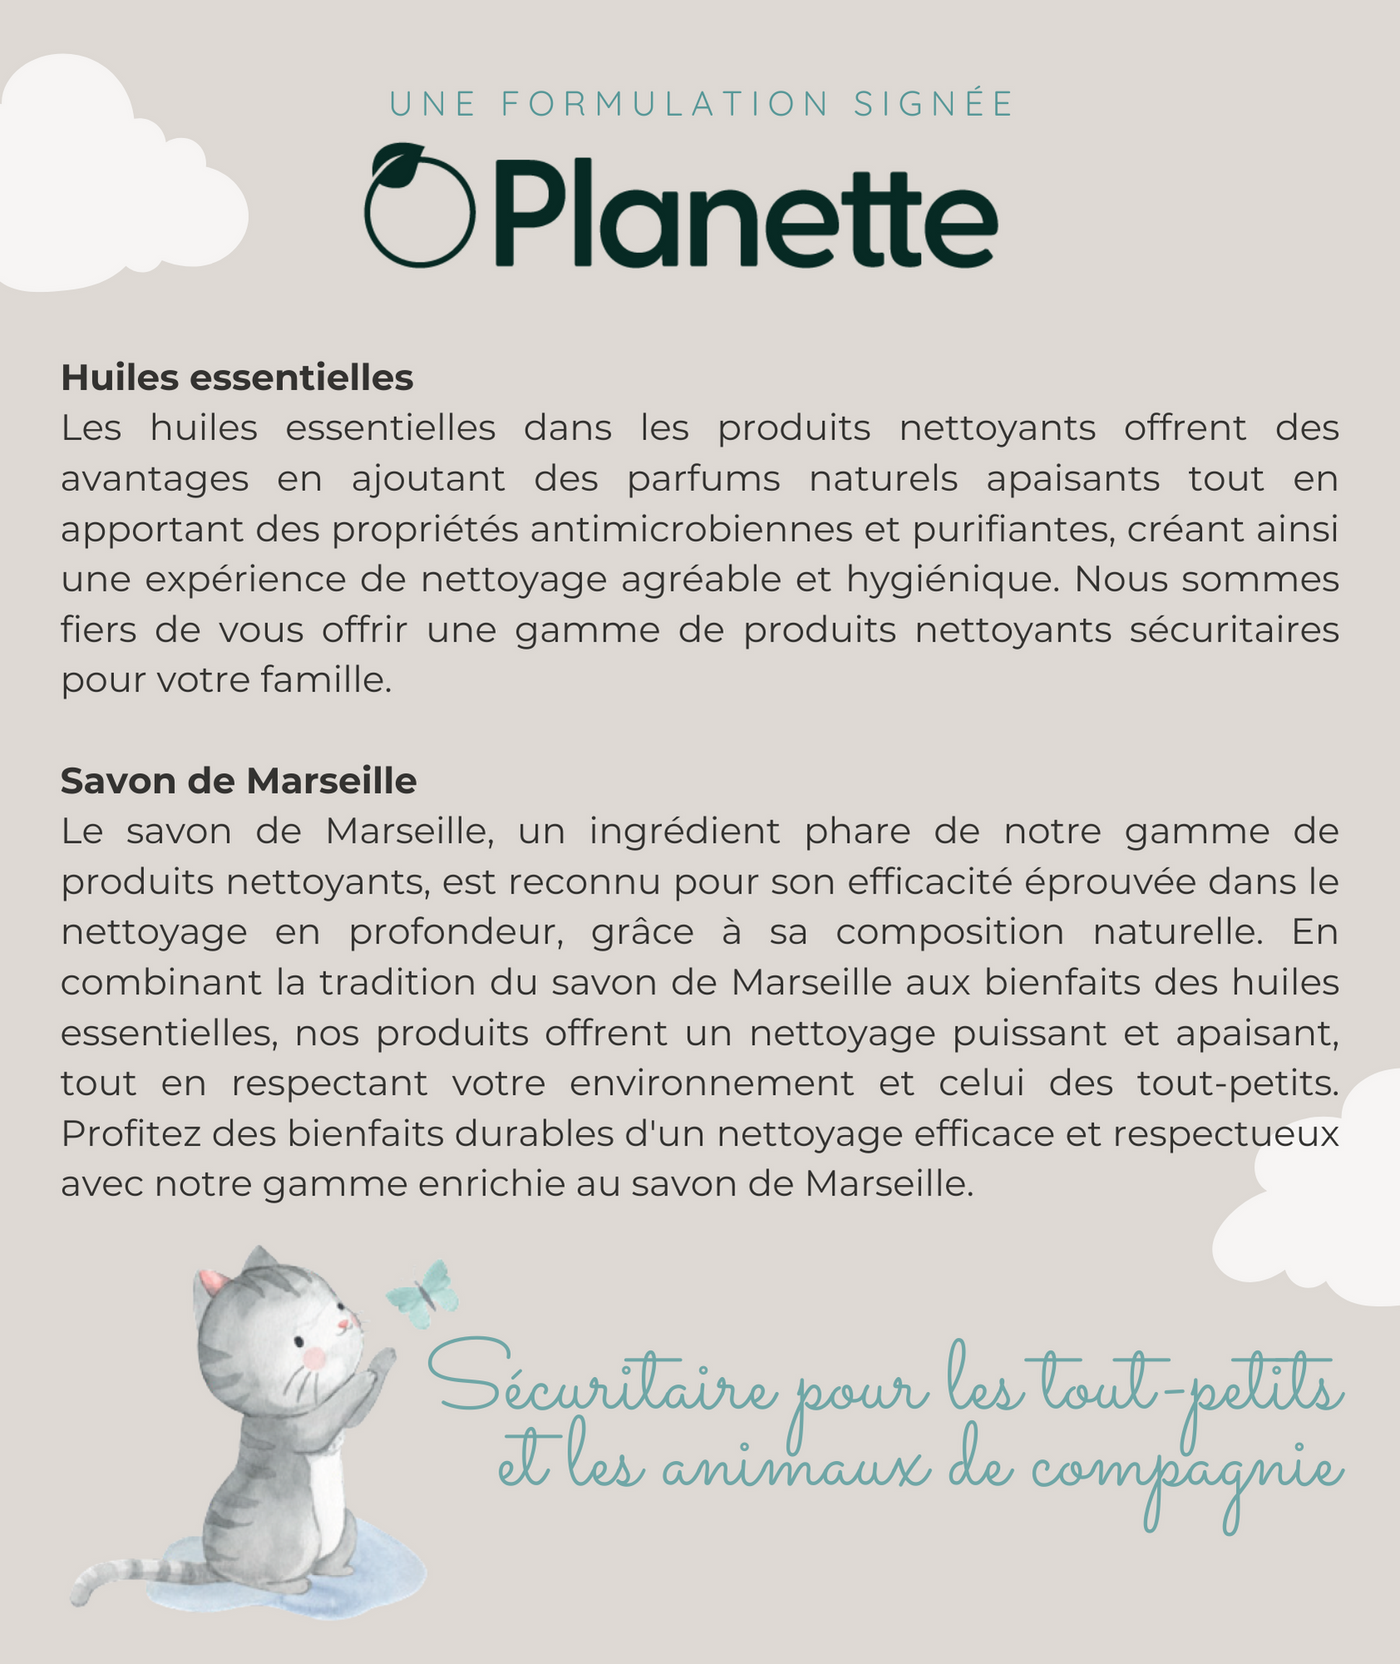 Gamme nettoyante - Nettoyant pour surface de bois - 500 ml - Boite de 8 - Veille sur toi & Planette